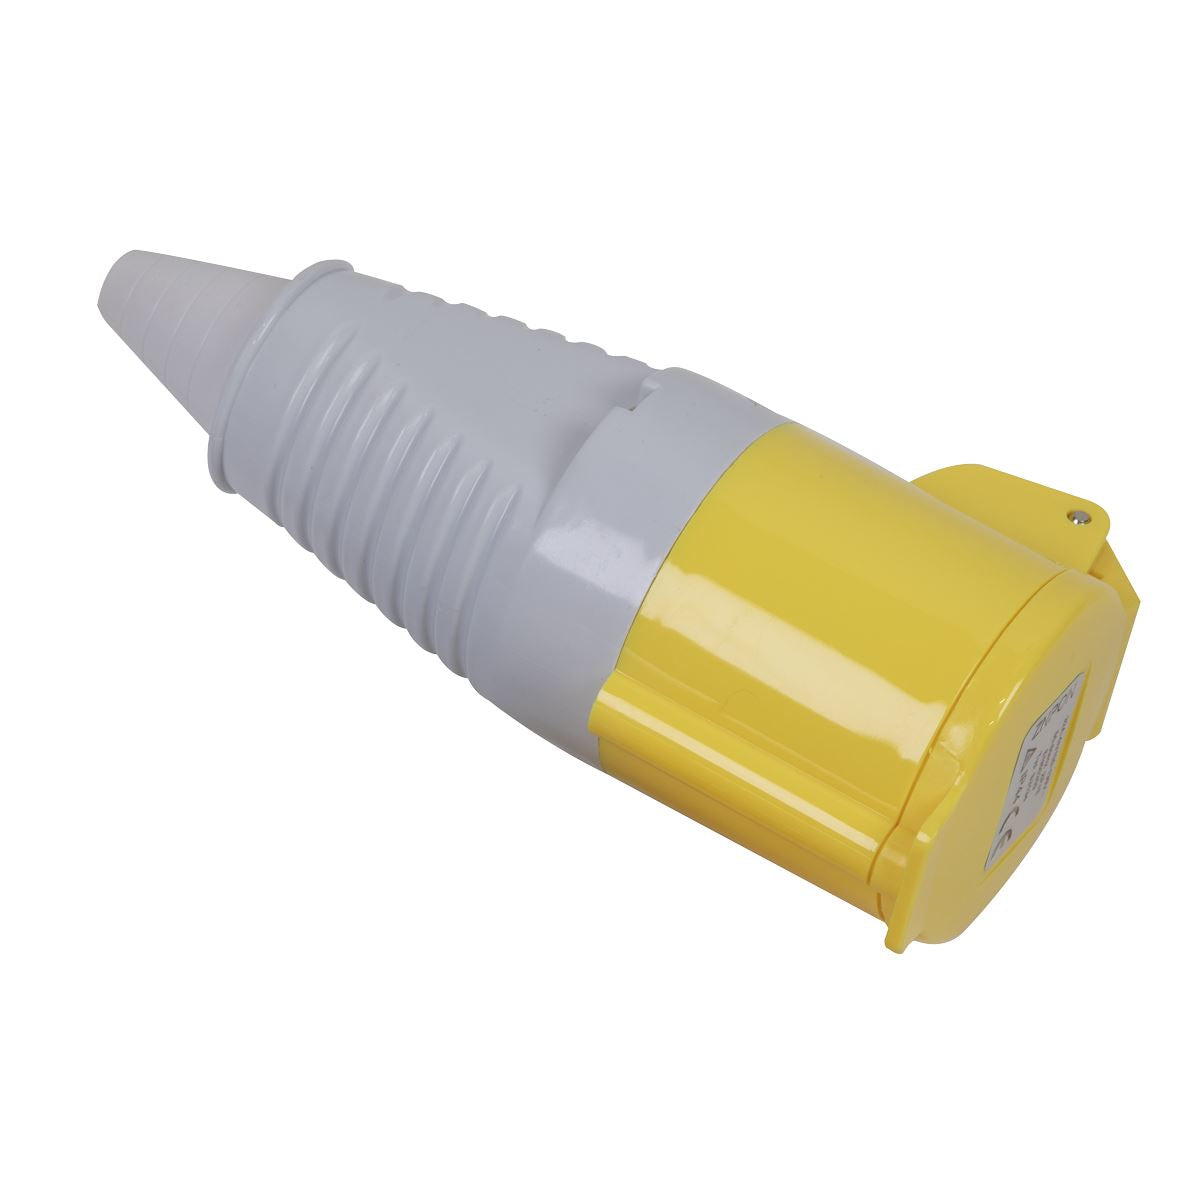 Sealey Yellow Socket 110V 32A